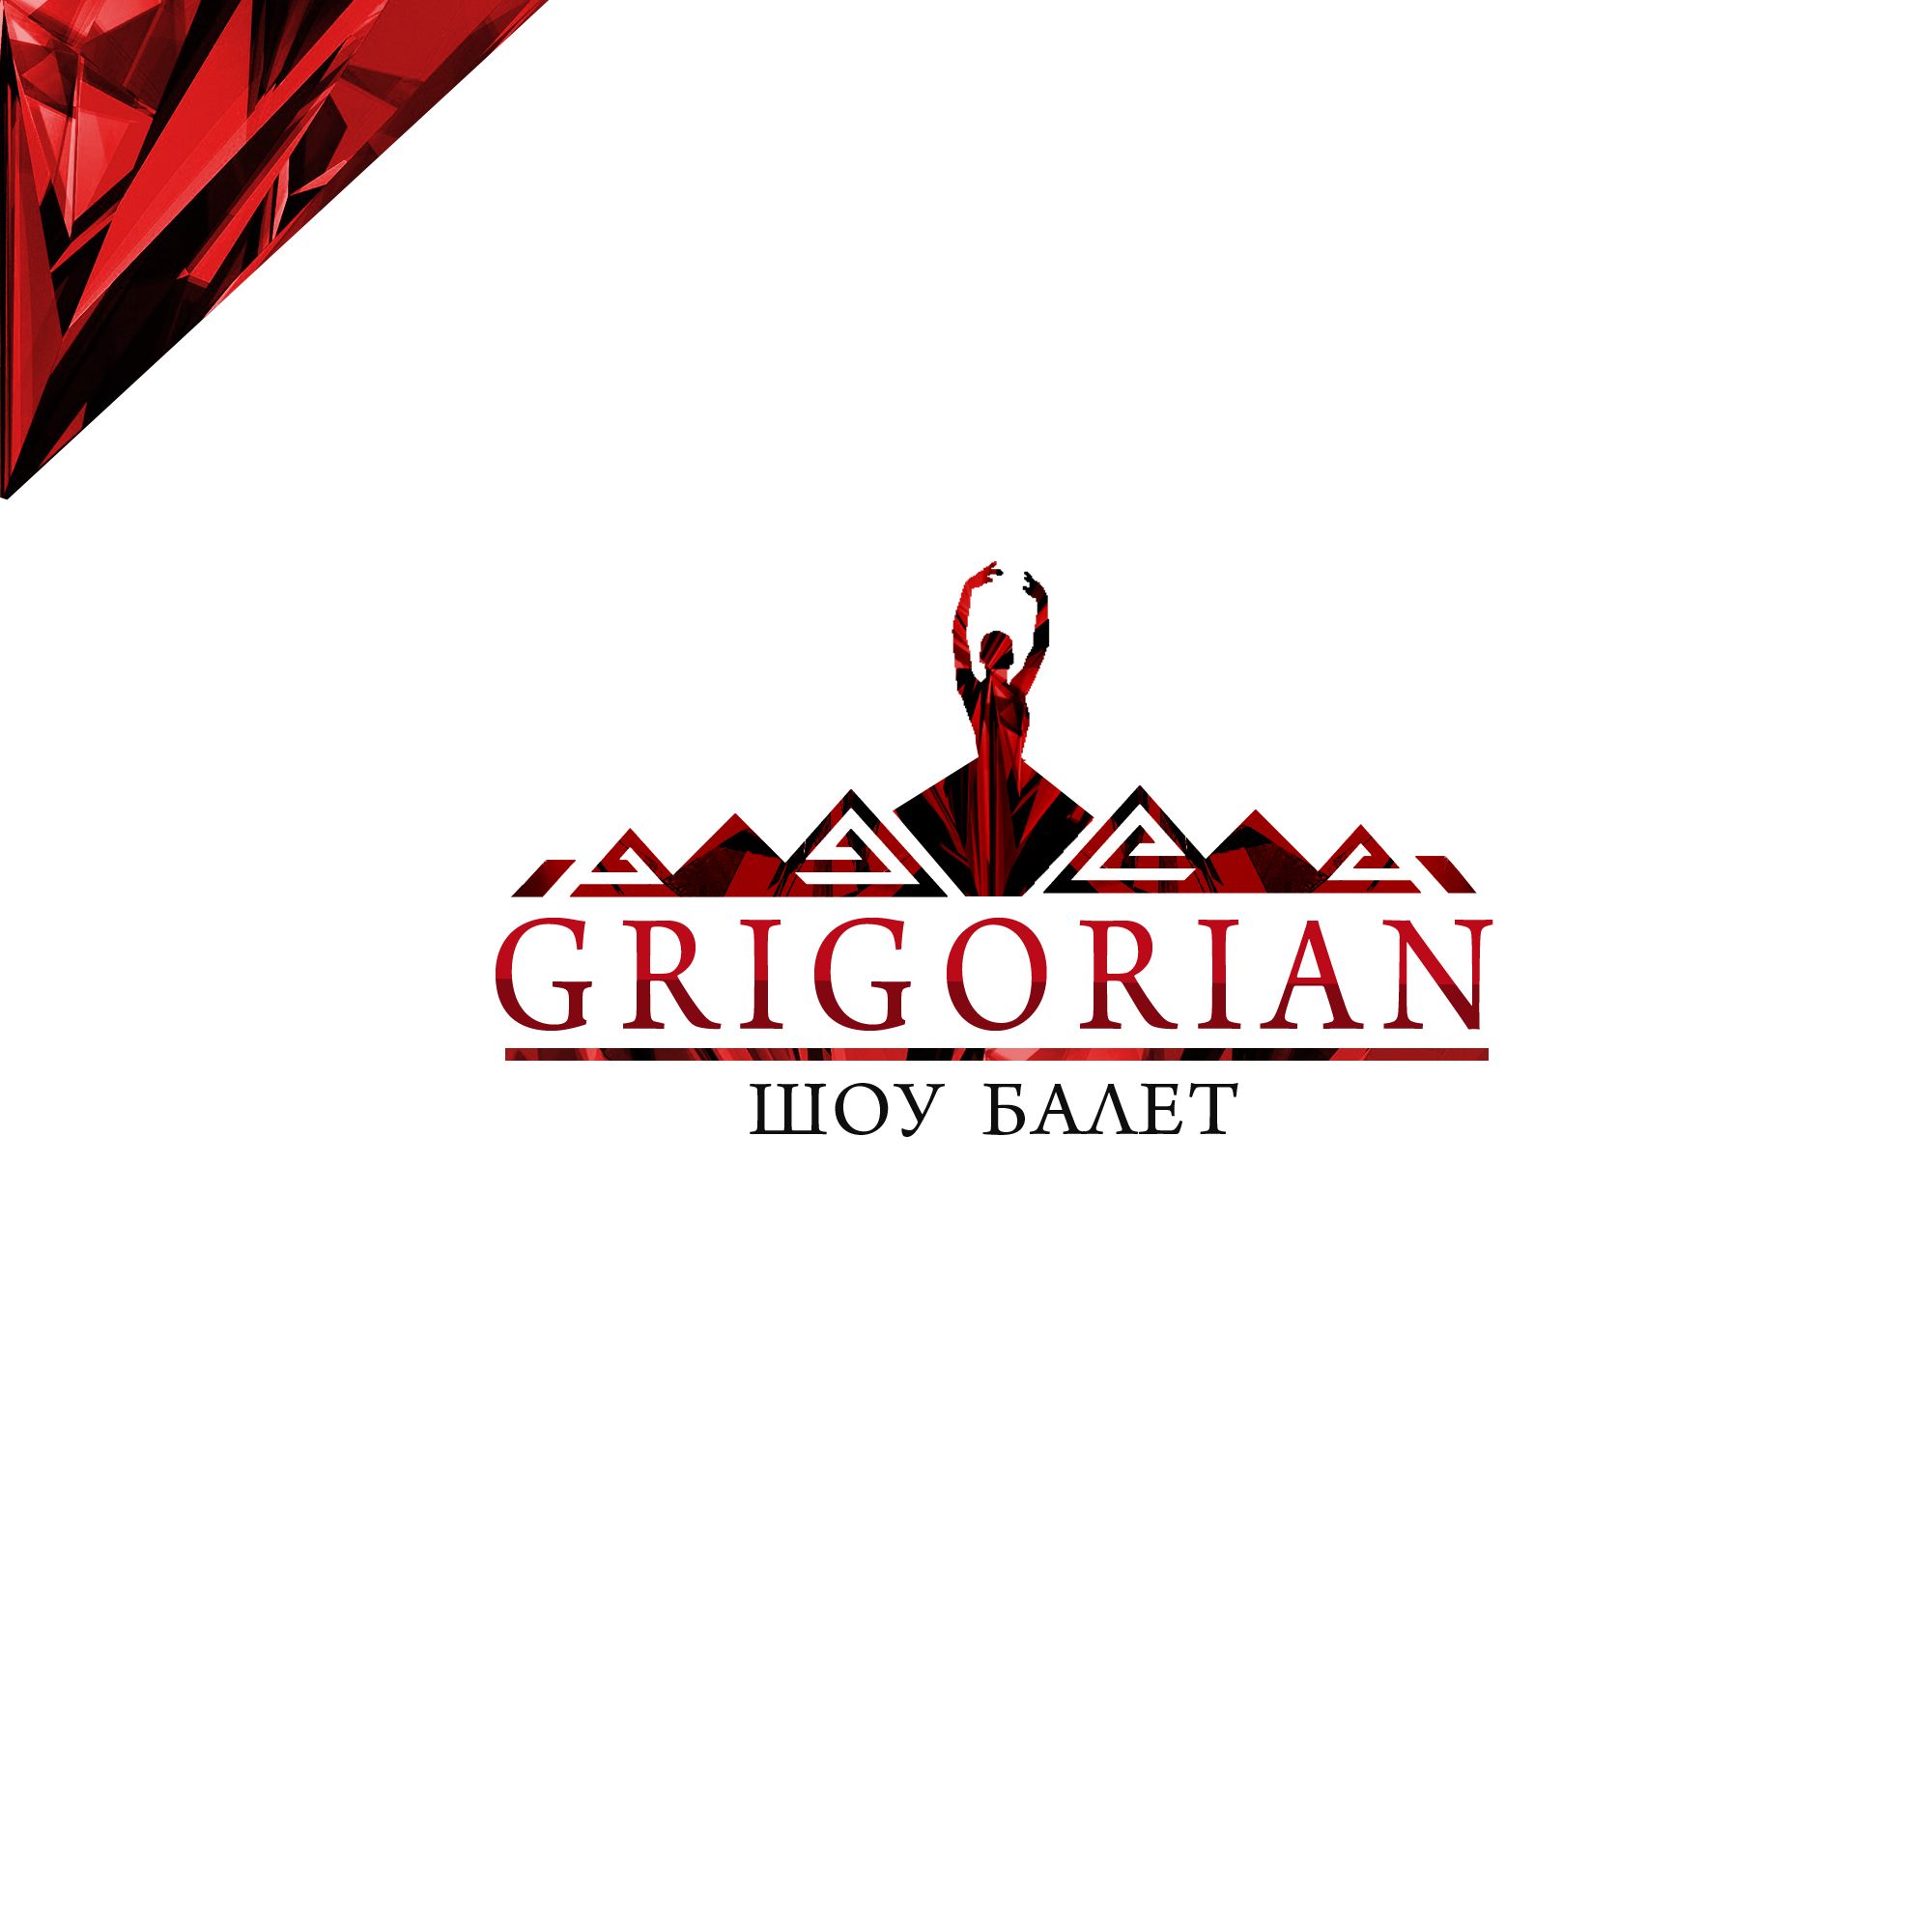 Фирменный стиль и лого для шоу-балета Grigorian - дизайнер Maz